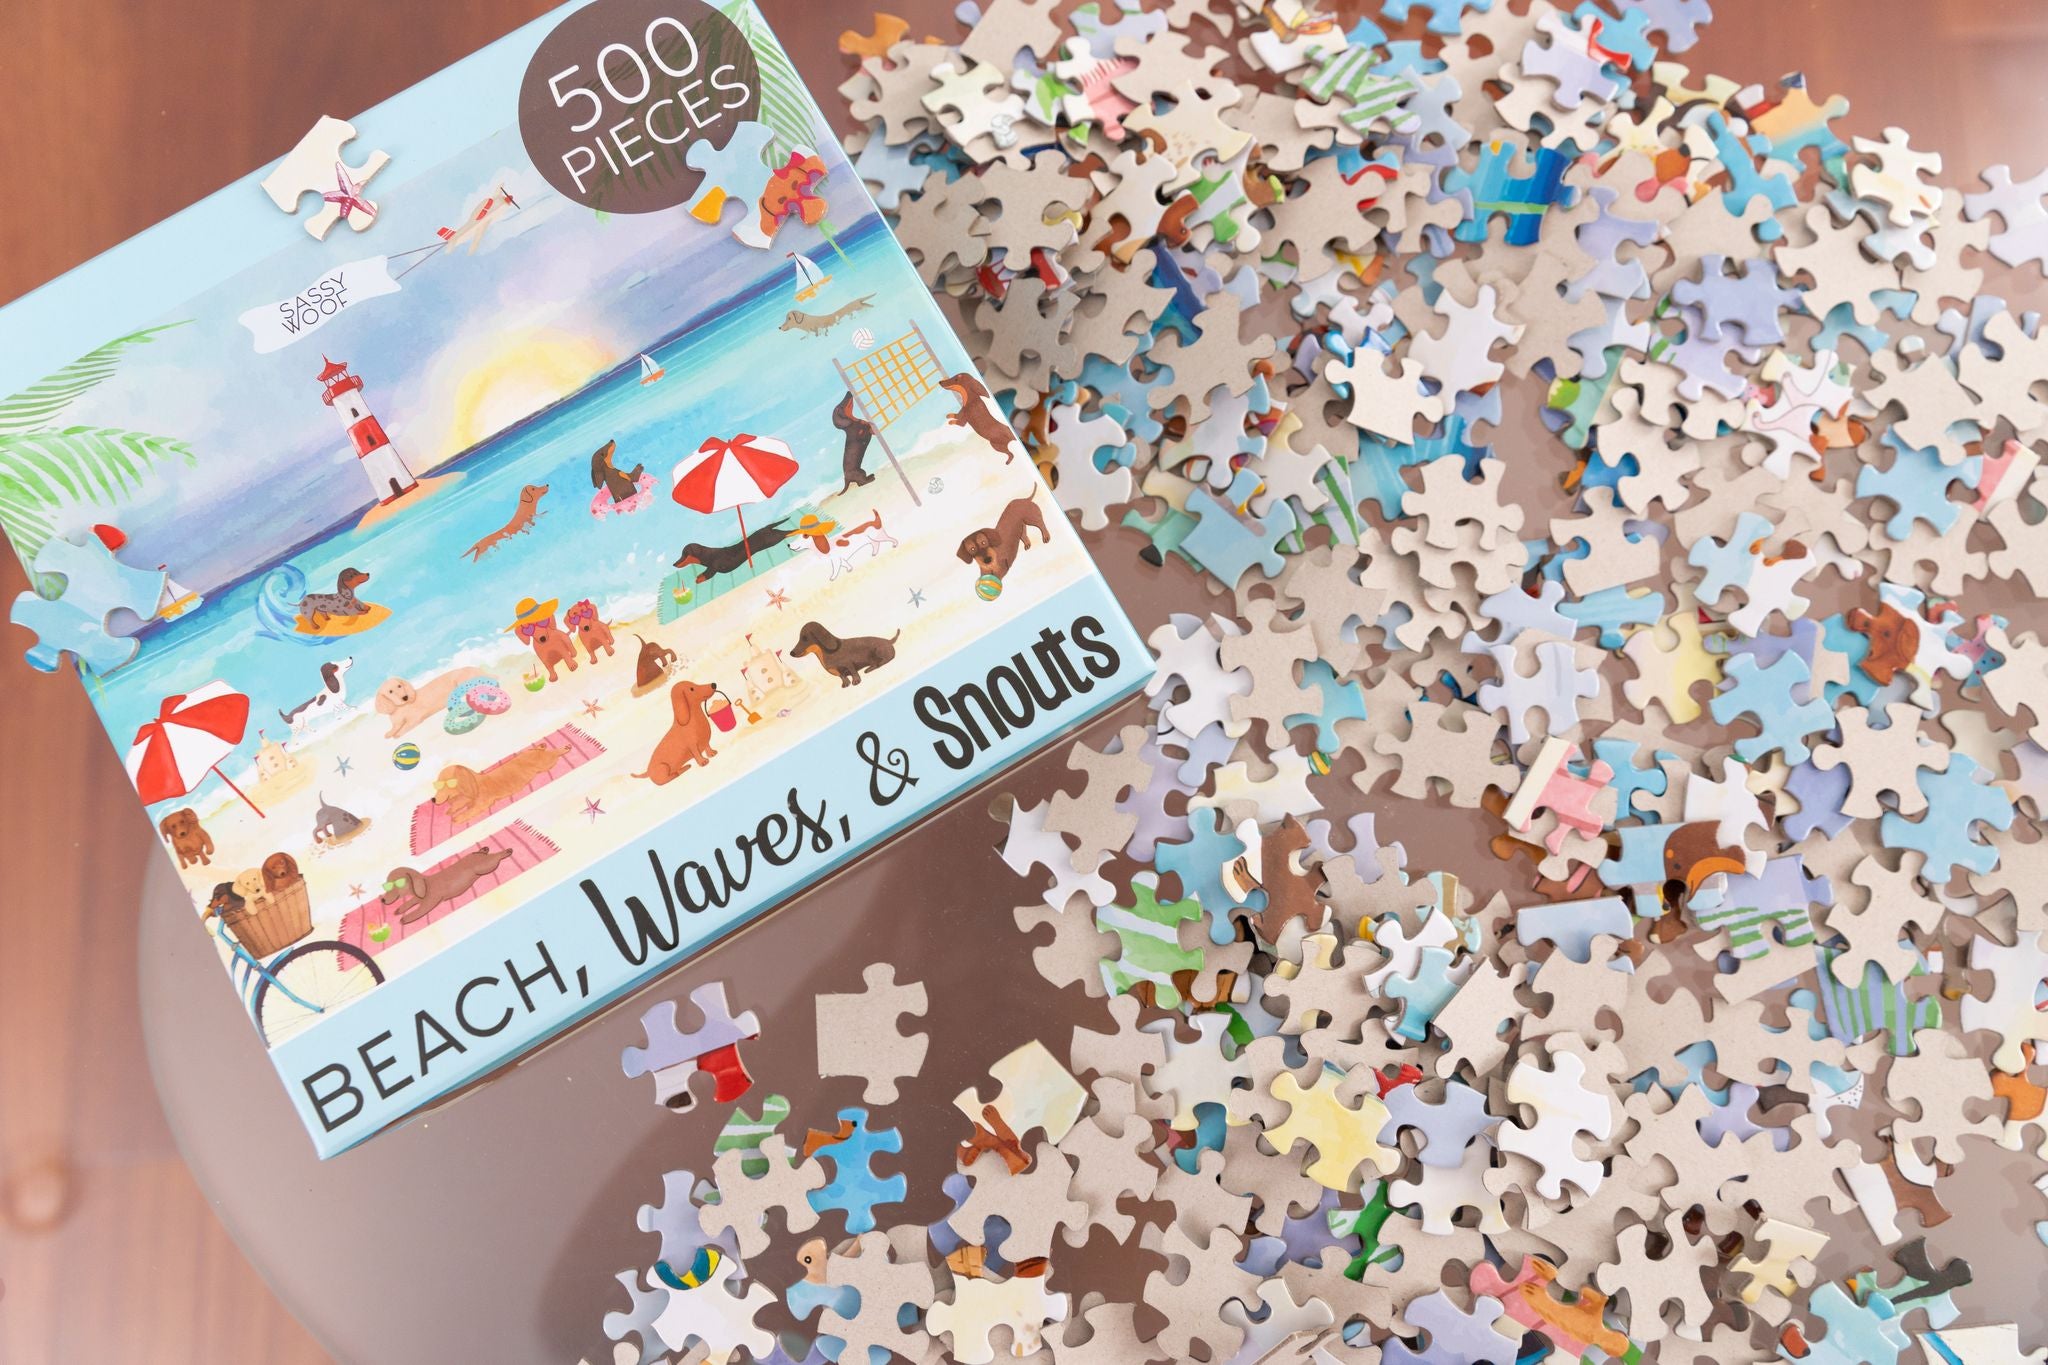 Beach, Waves, &amp; Snouts Puzzle 500 Pieces - Henlo Pets